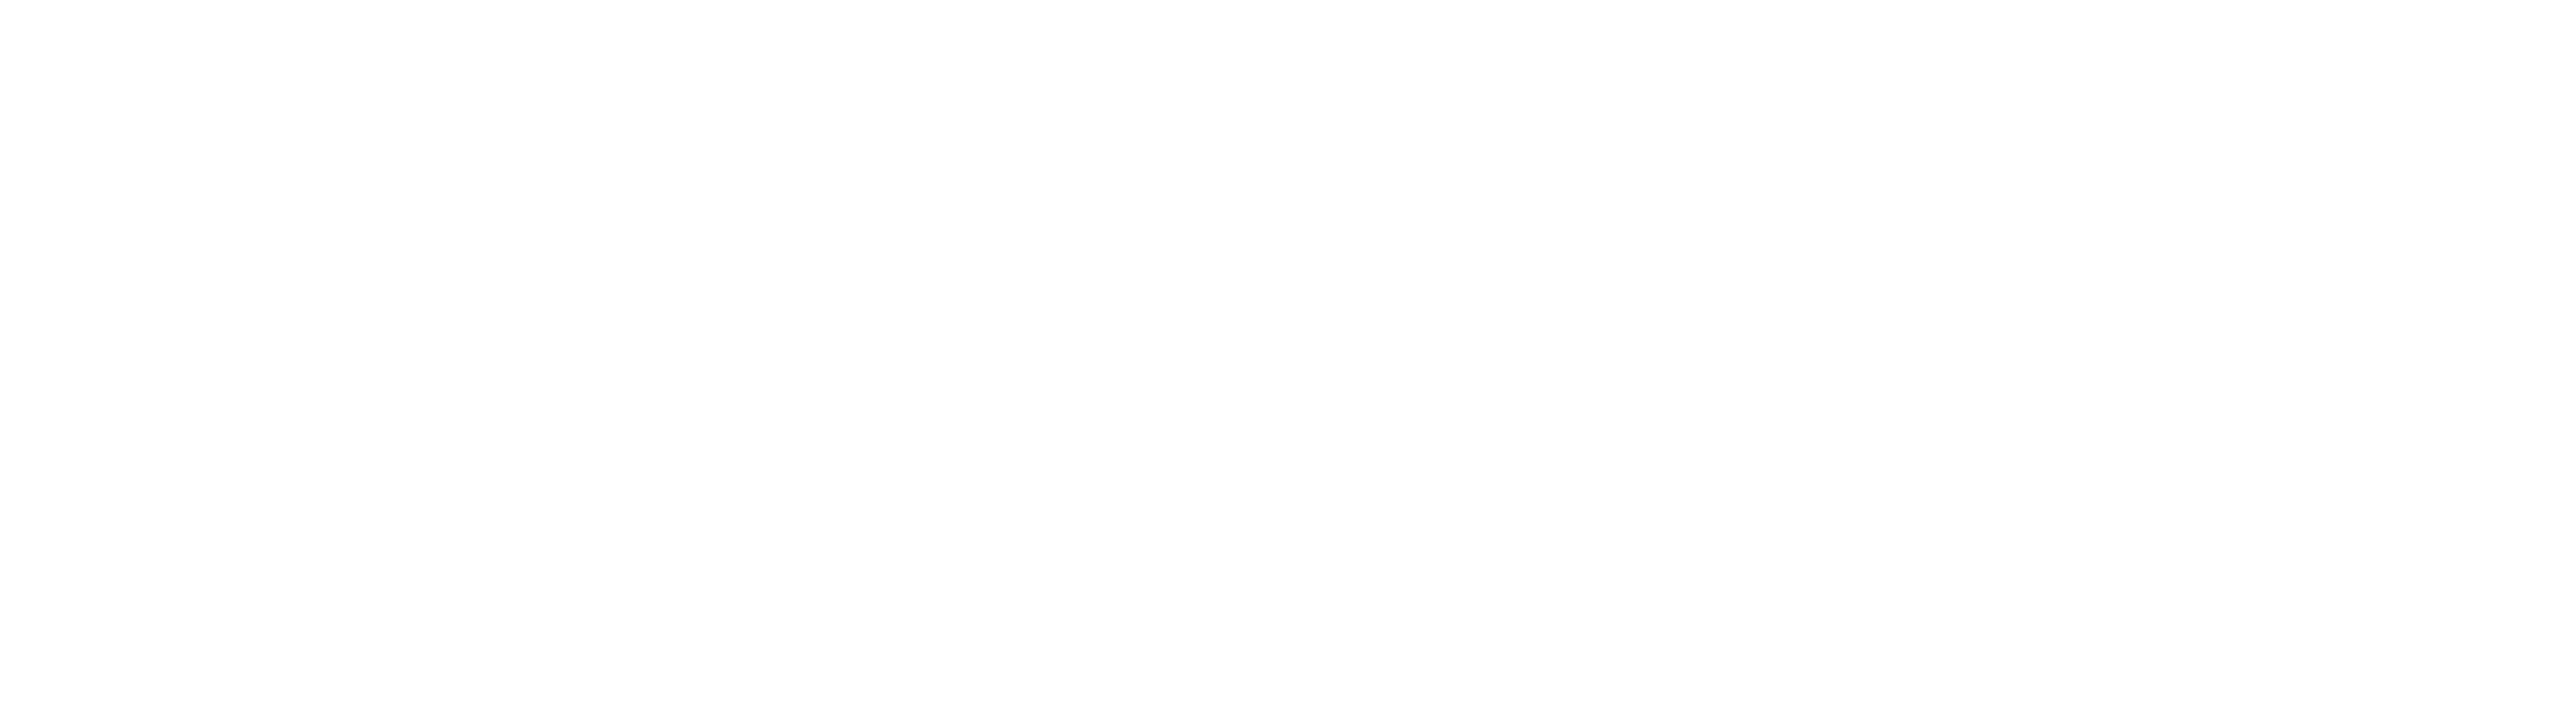 Camara Nacional